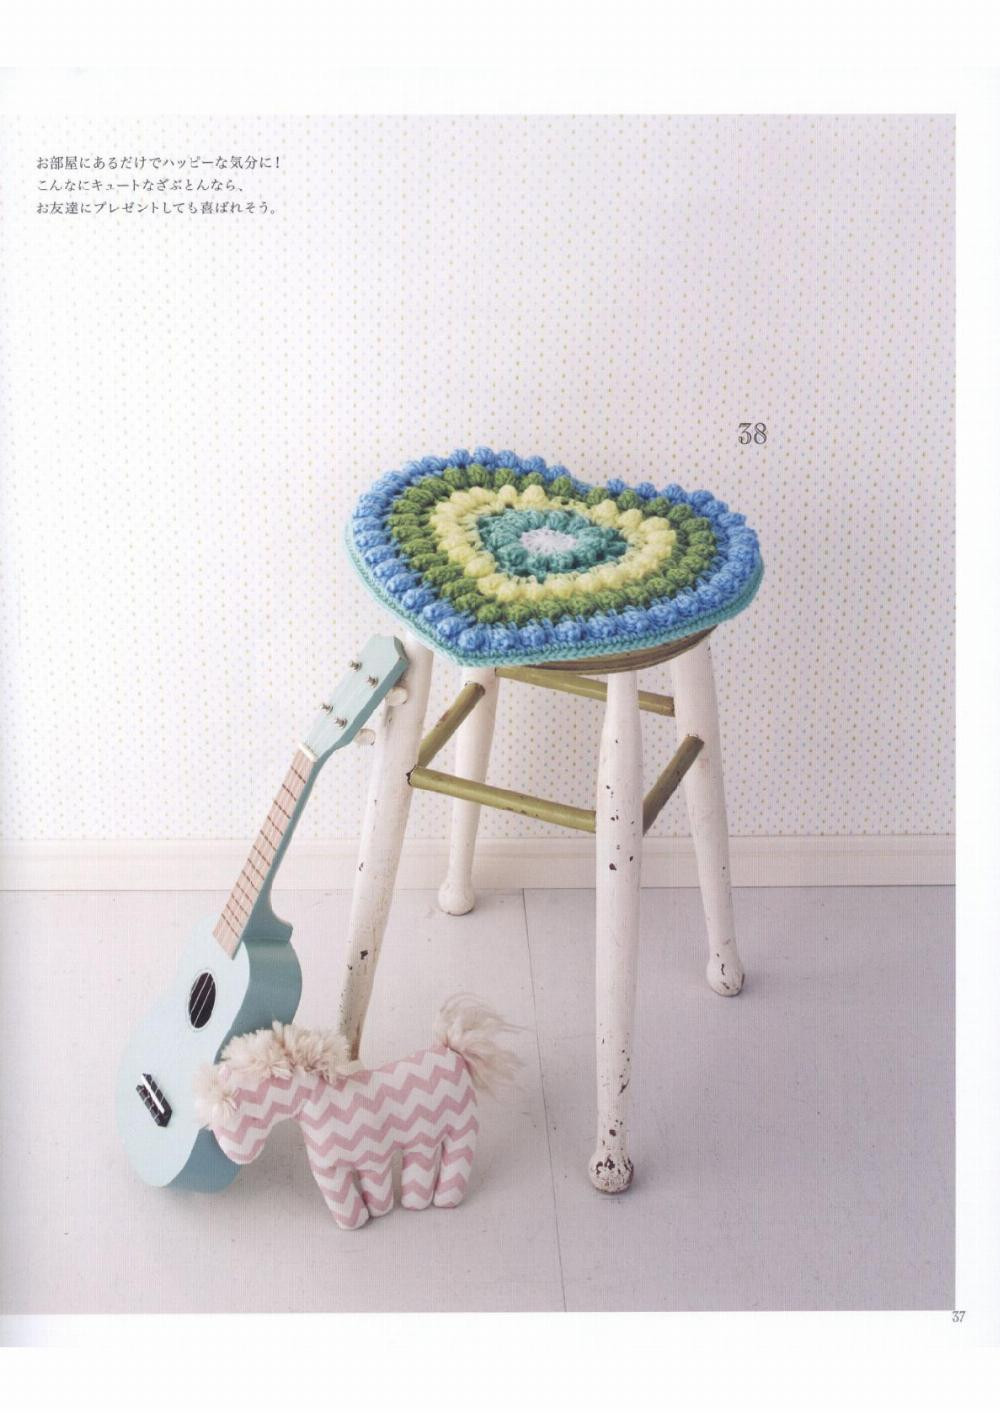 crochet pattern best selection flowery cushion